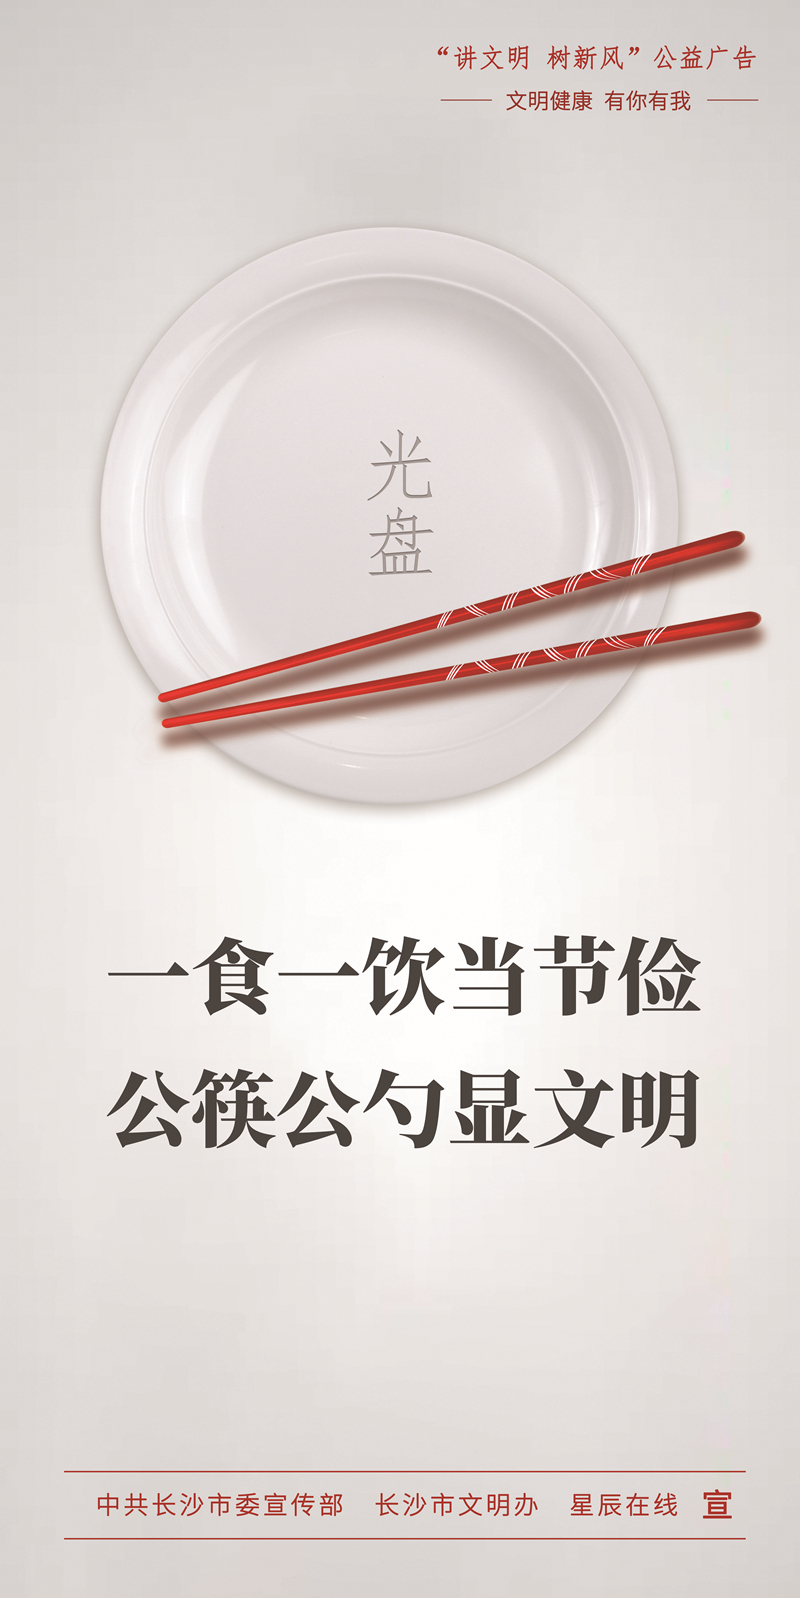 一食一饮当节俭 公筷公勺显文明（竖）